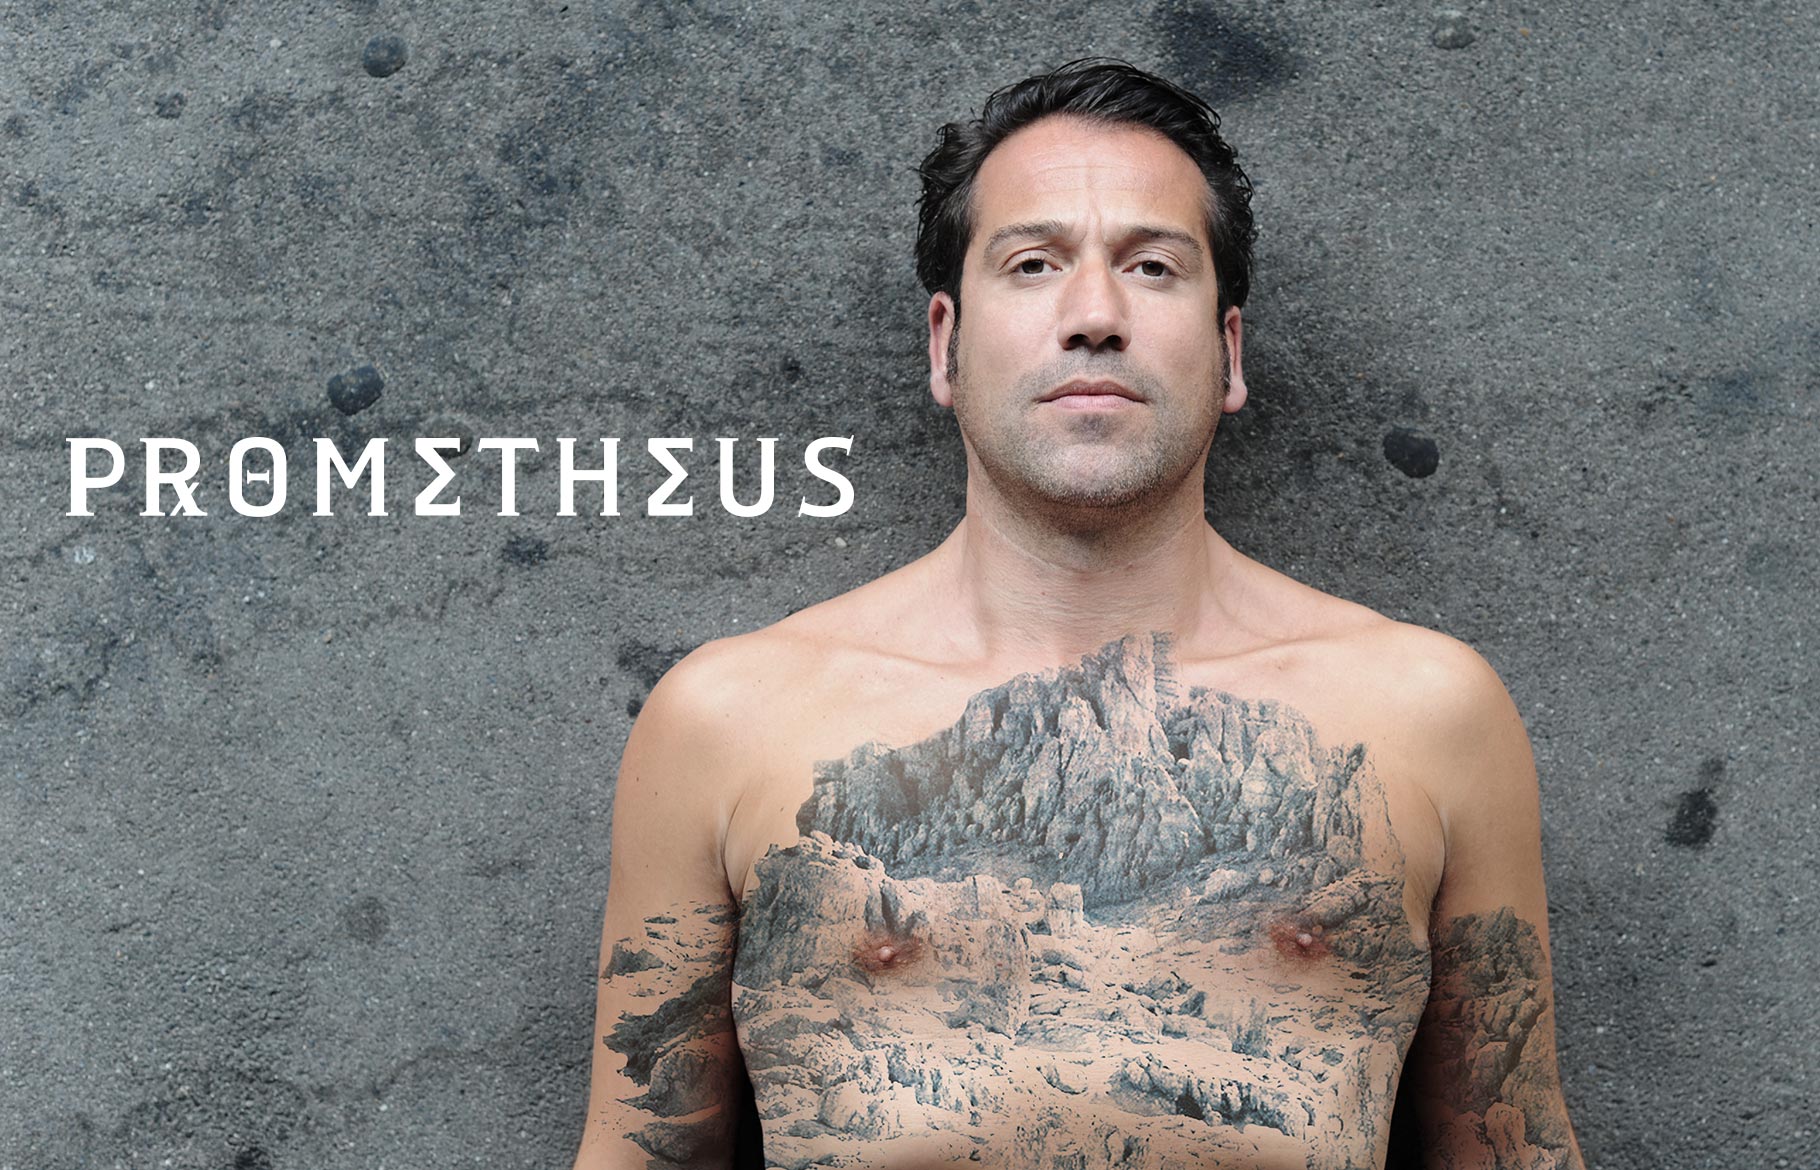 Foto für 'Prometheus': Ein Mann liegt auf dem Asphalt. Auf seinem nackten Oberkörper ist ein großflächiges Tattoo einer Landschaft zu sehen.